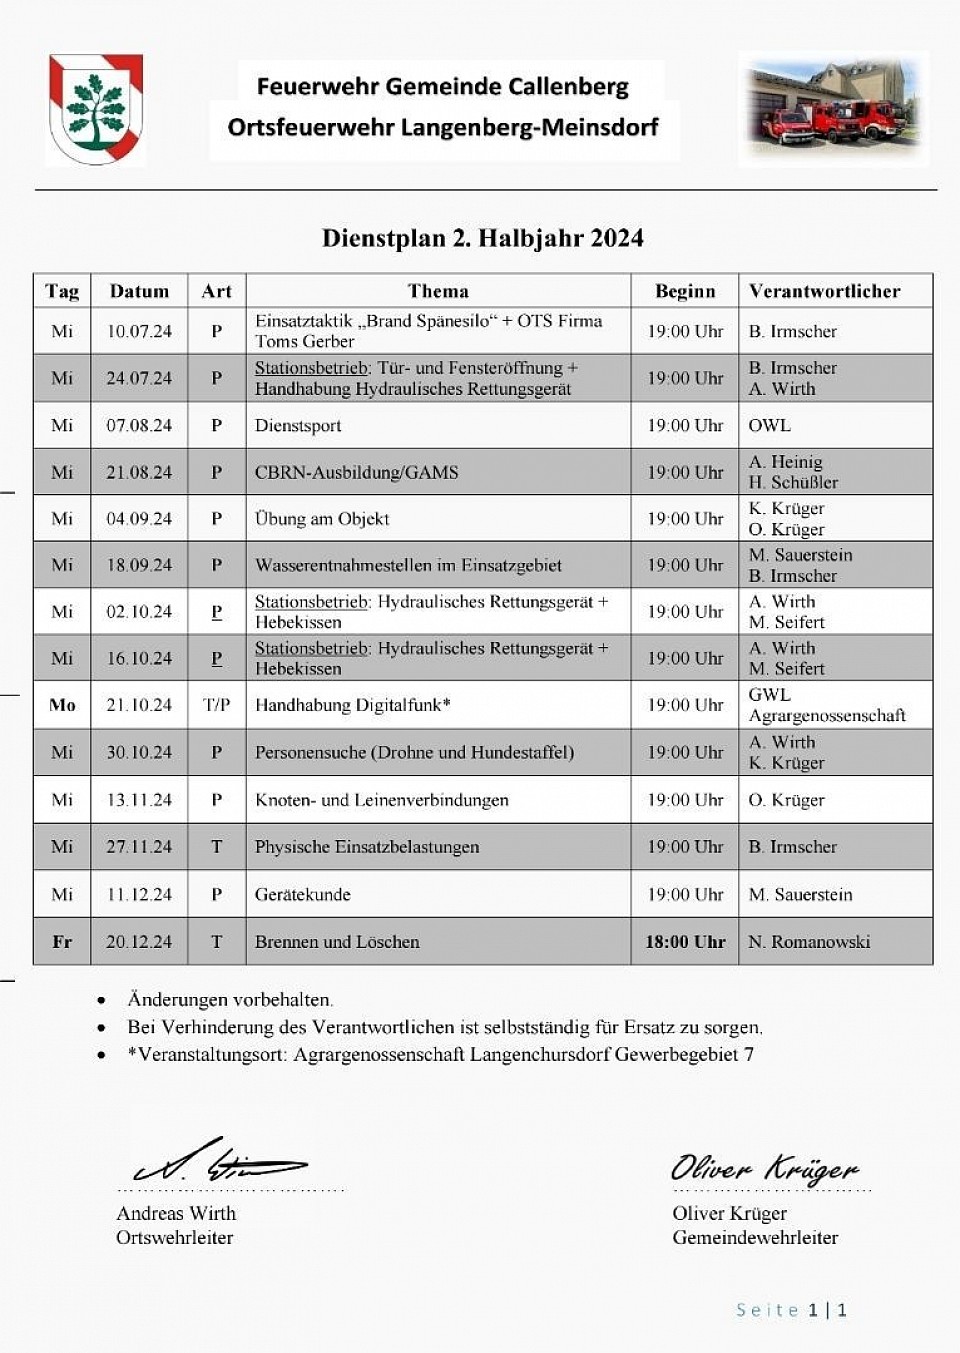 Dienstplan 2024 zweites Halbjahr, Ortsfeuerwehr Langenberg - Meinsdorf